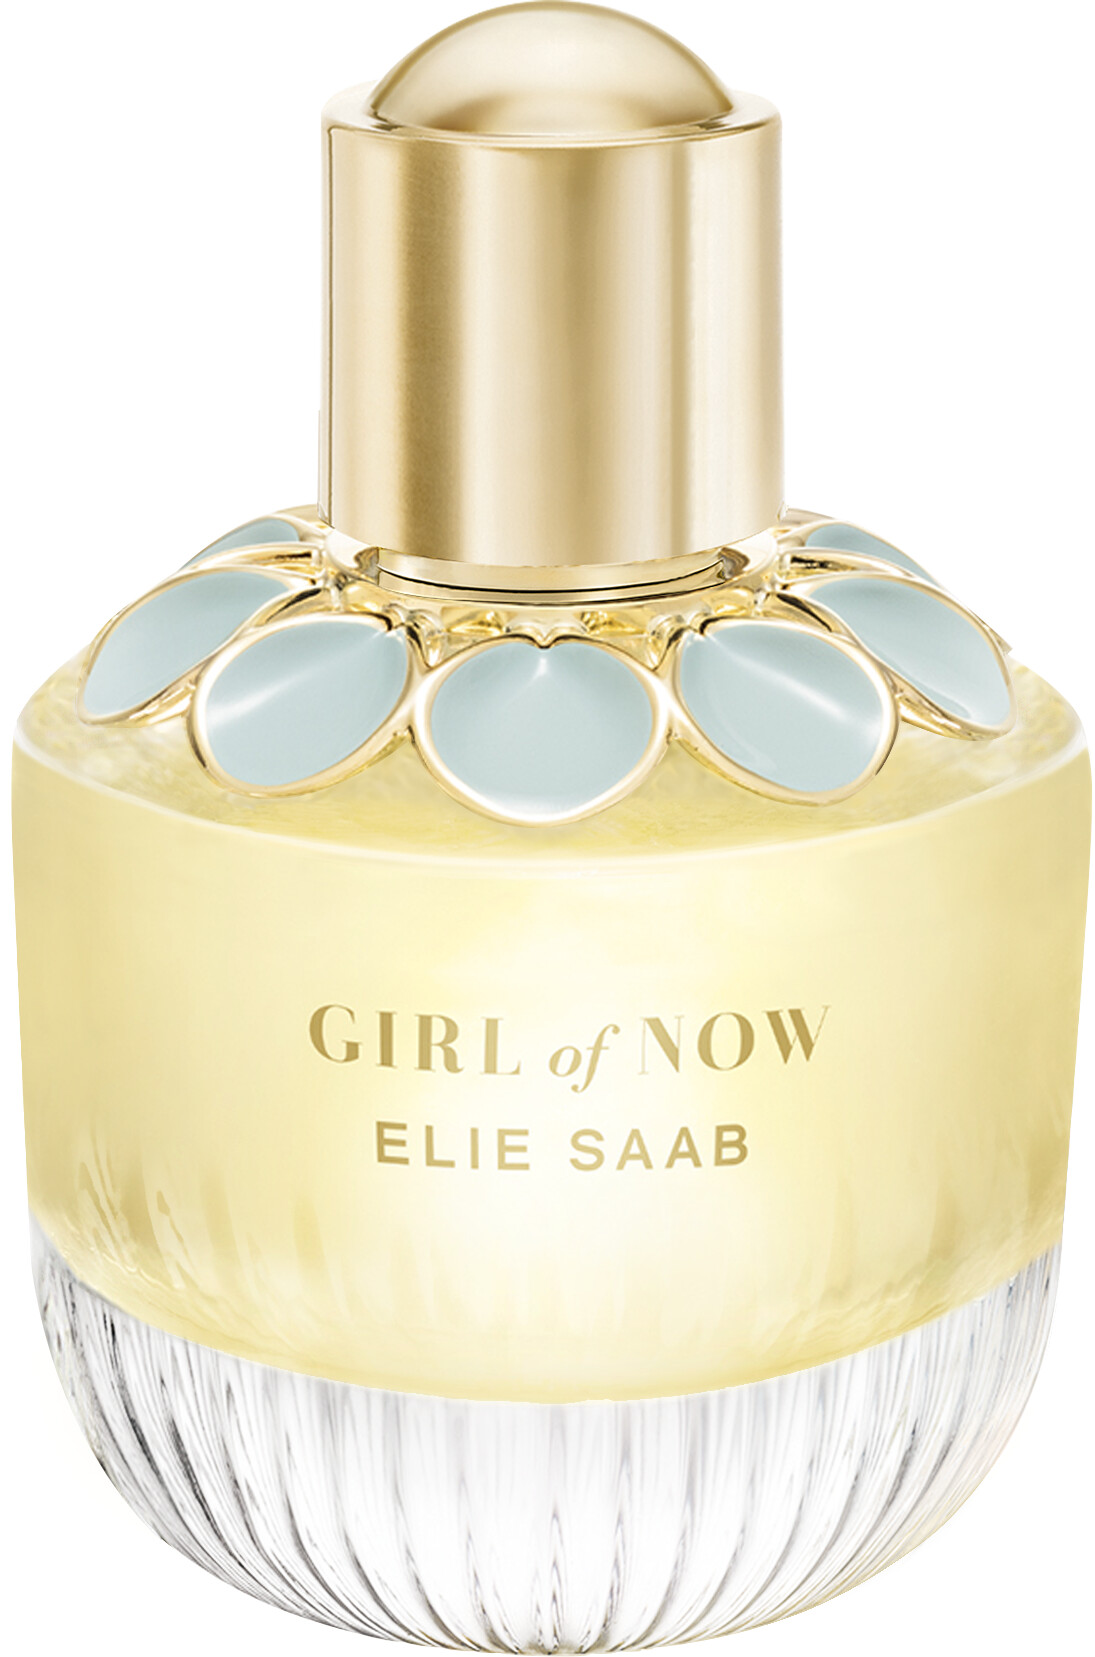 Elie Saab Girl of Now Eau de Parfum Spray 50ml